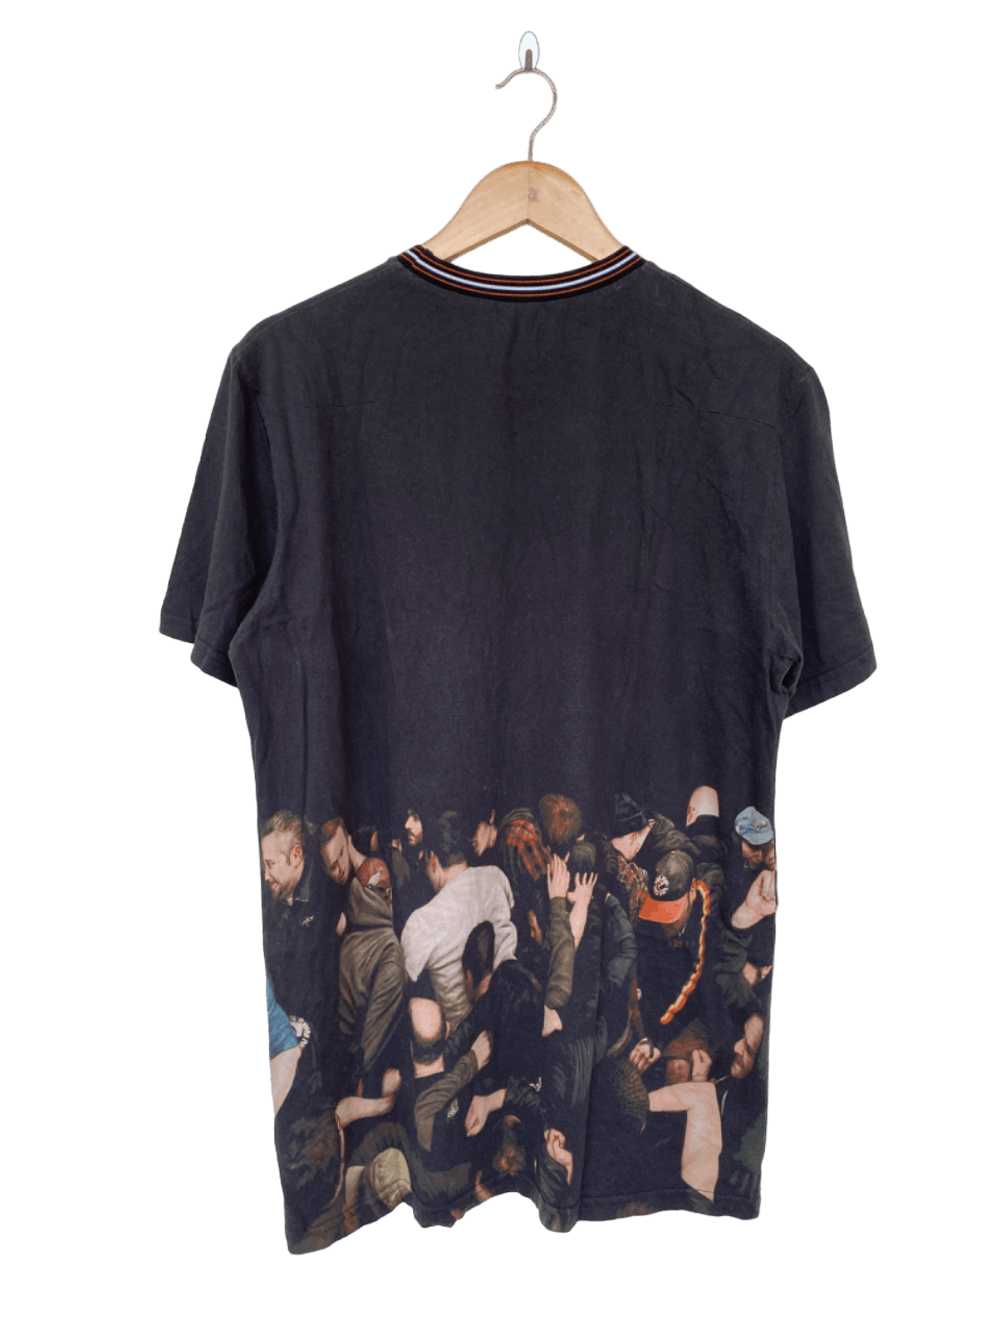 Dior × Hedi Slimane AW07 Dior Homme T Shirt - image 2